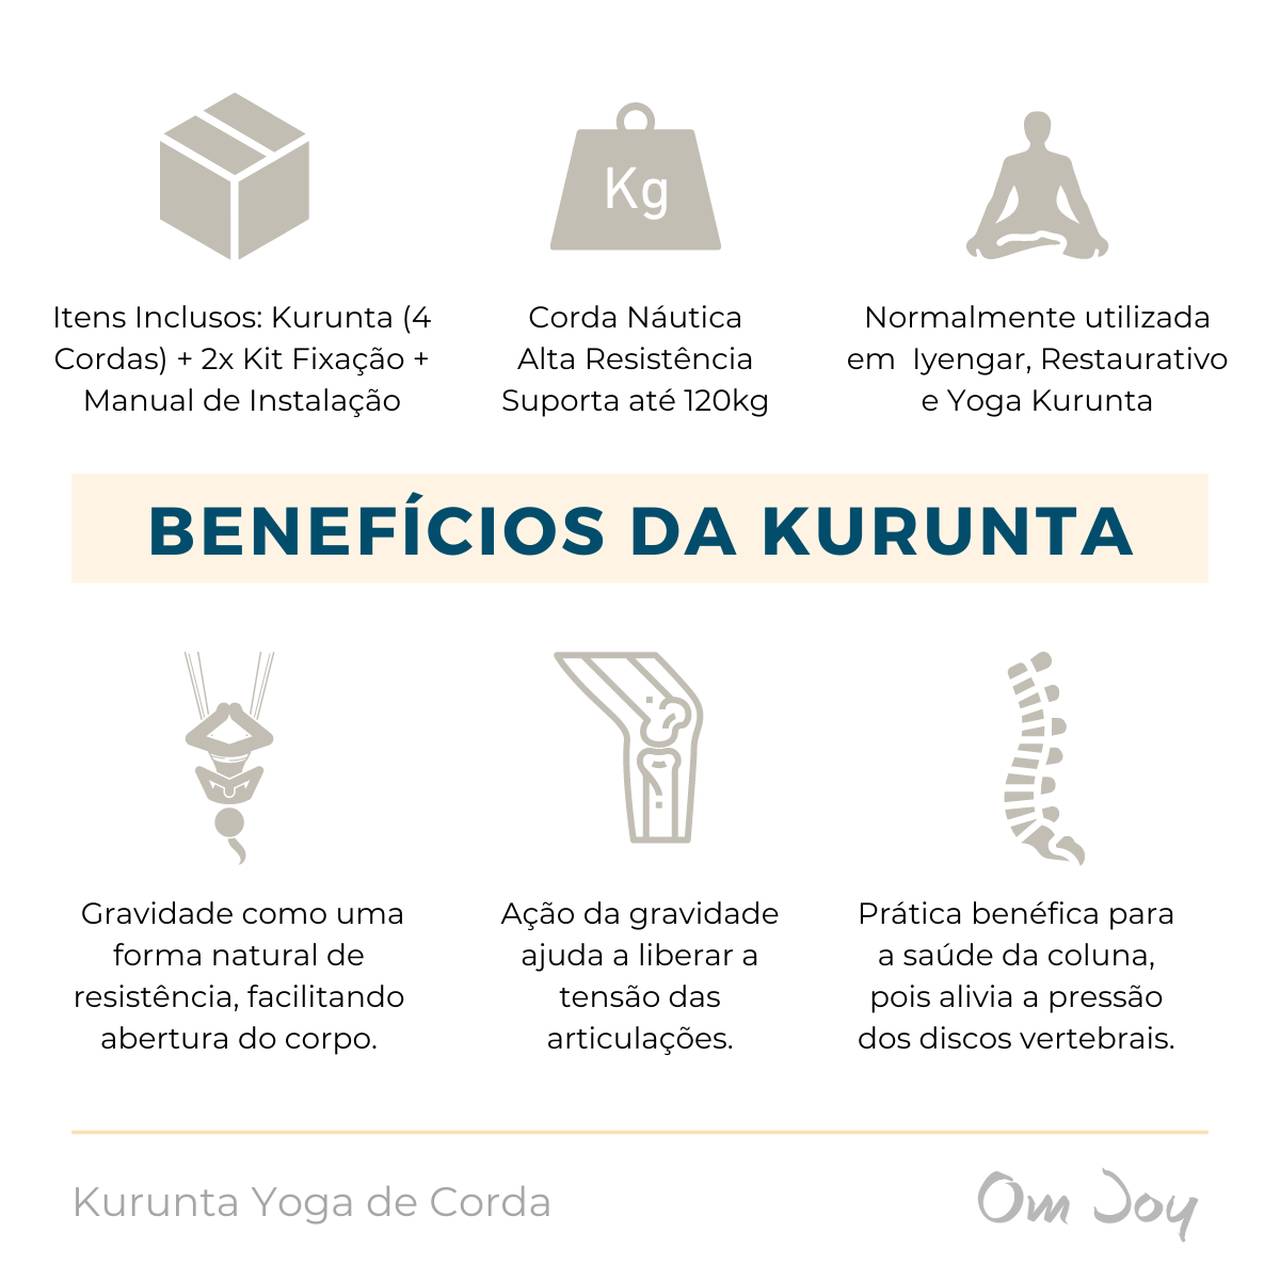 Kurunta Yoga de Corda - Om Joy